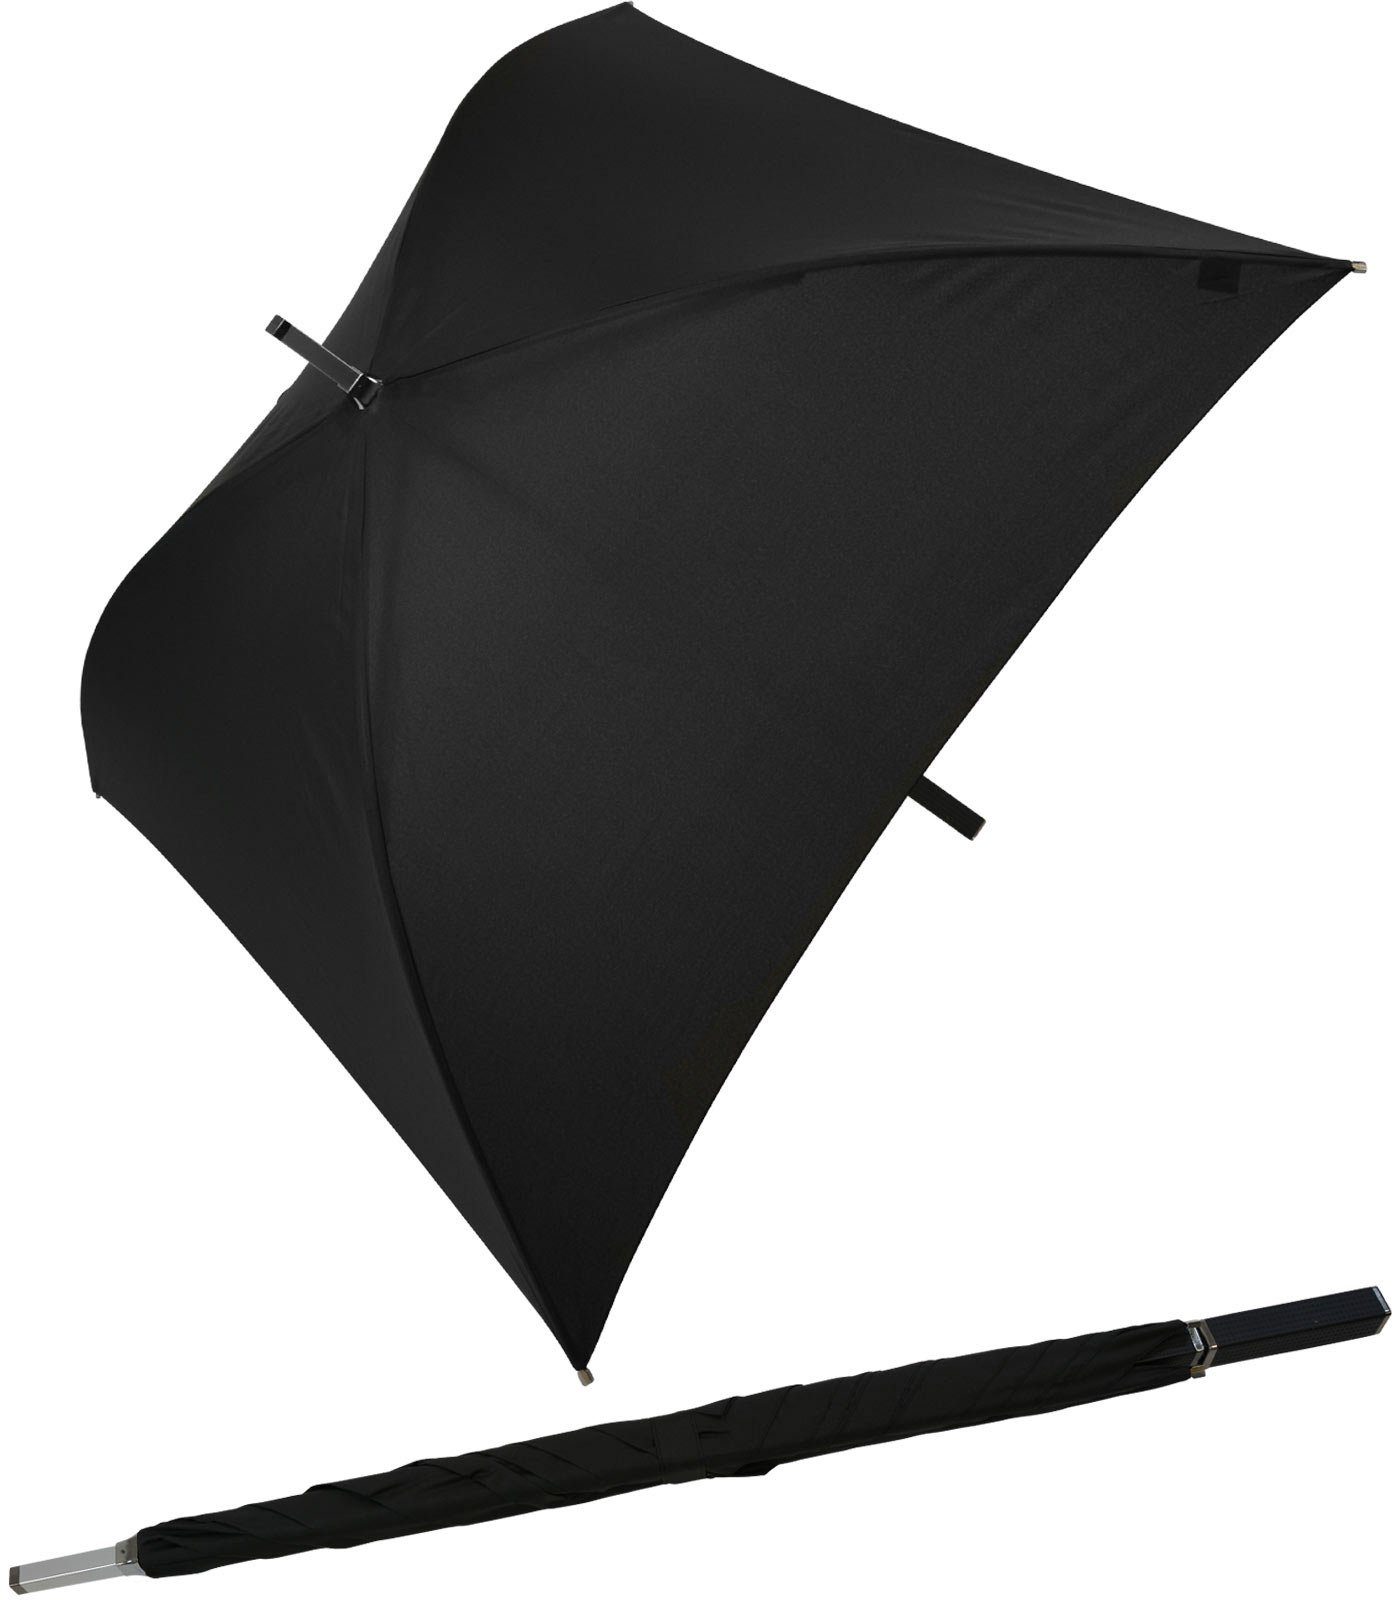 Impliva Langregenschirm All Square® voll quadratischer Regenschirm, der ganz besondere Regenschirm schwarz | Stockschirme